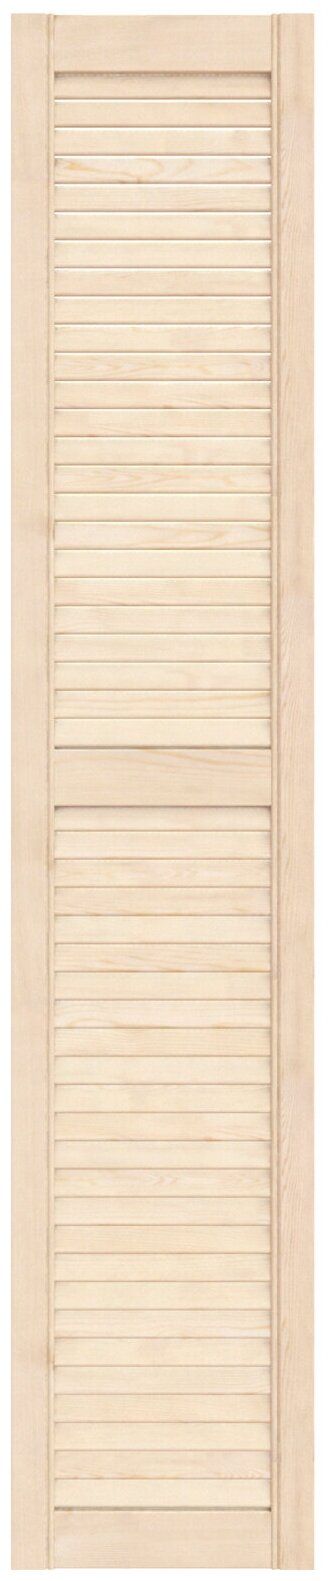 Дверь жалюзийная деревянная 294х1505мм сосна сорт Экстра / Дверка жалюзи / Створка для ширмы